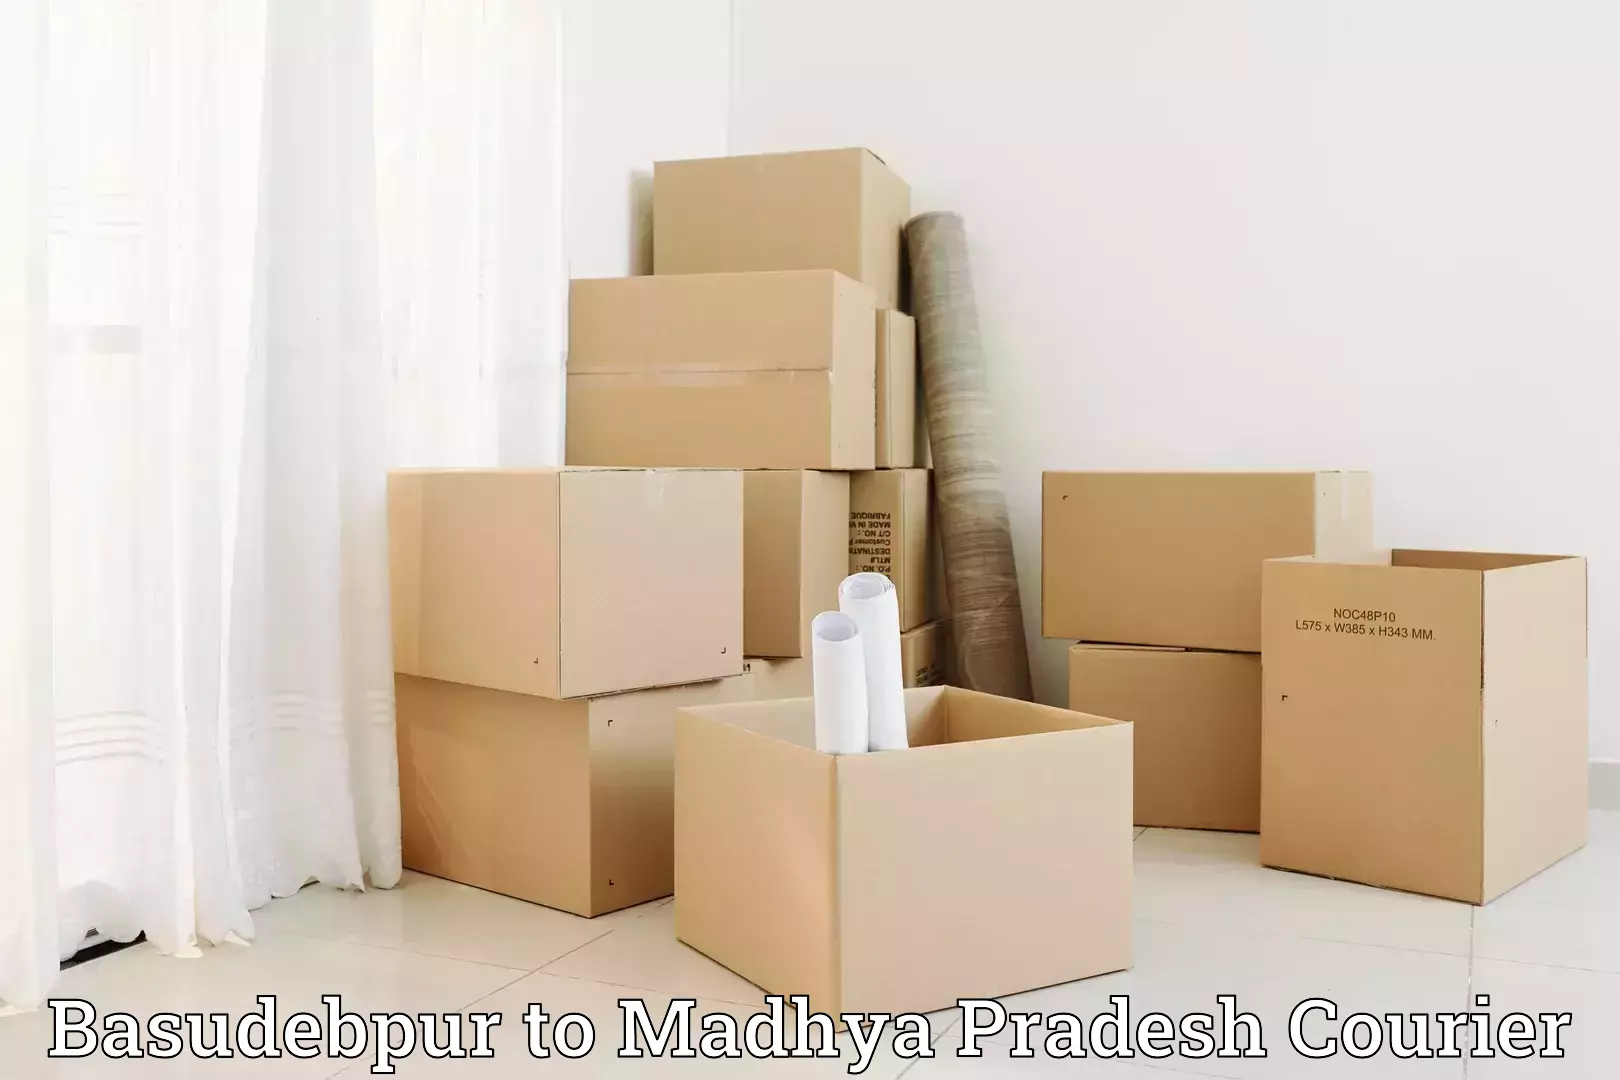 Efficient moving company Basudebpur to Nainpur